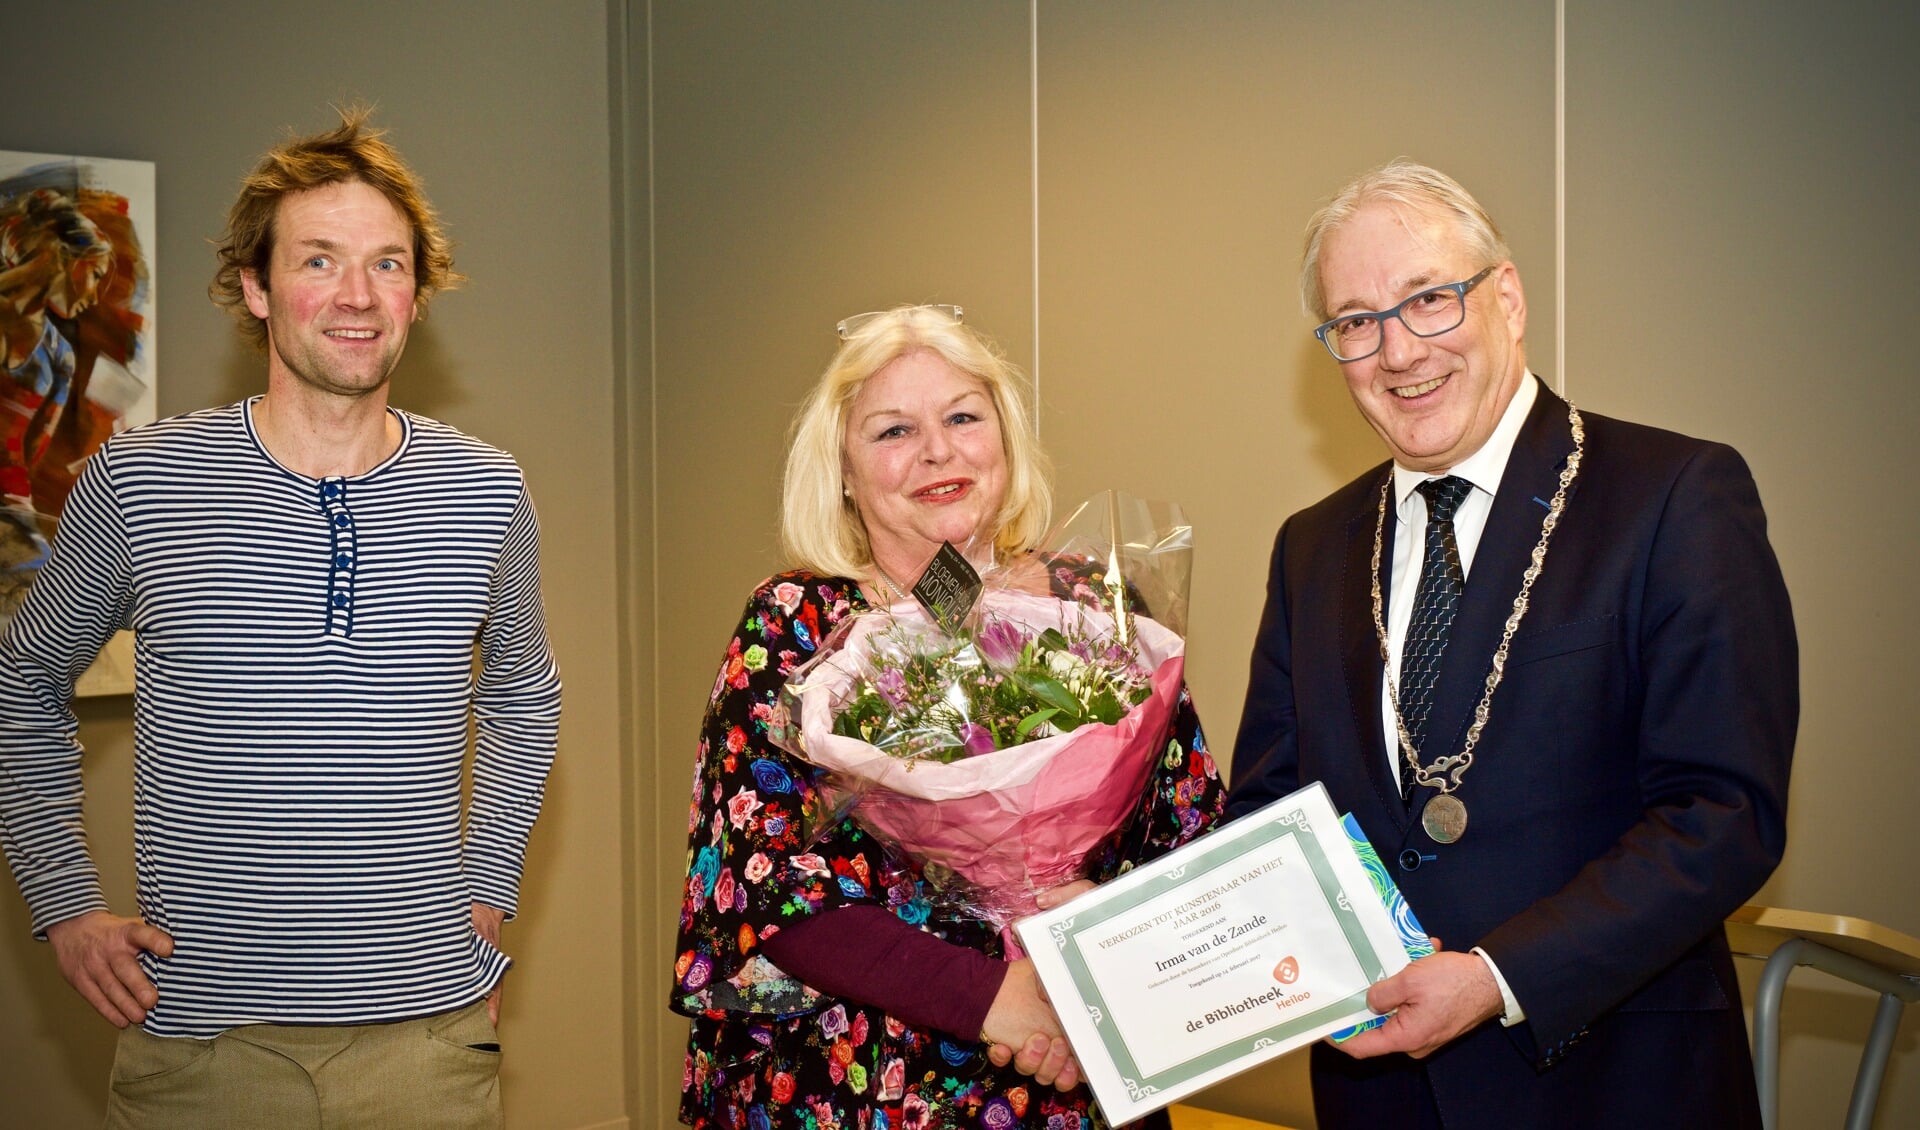 Links Theo Leering (Kunstenaar van het jaar 2015), Irma van der Zande en burgemeester Romeyn.
Foto: Stip Fotografie